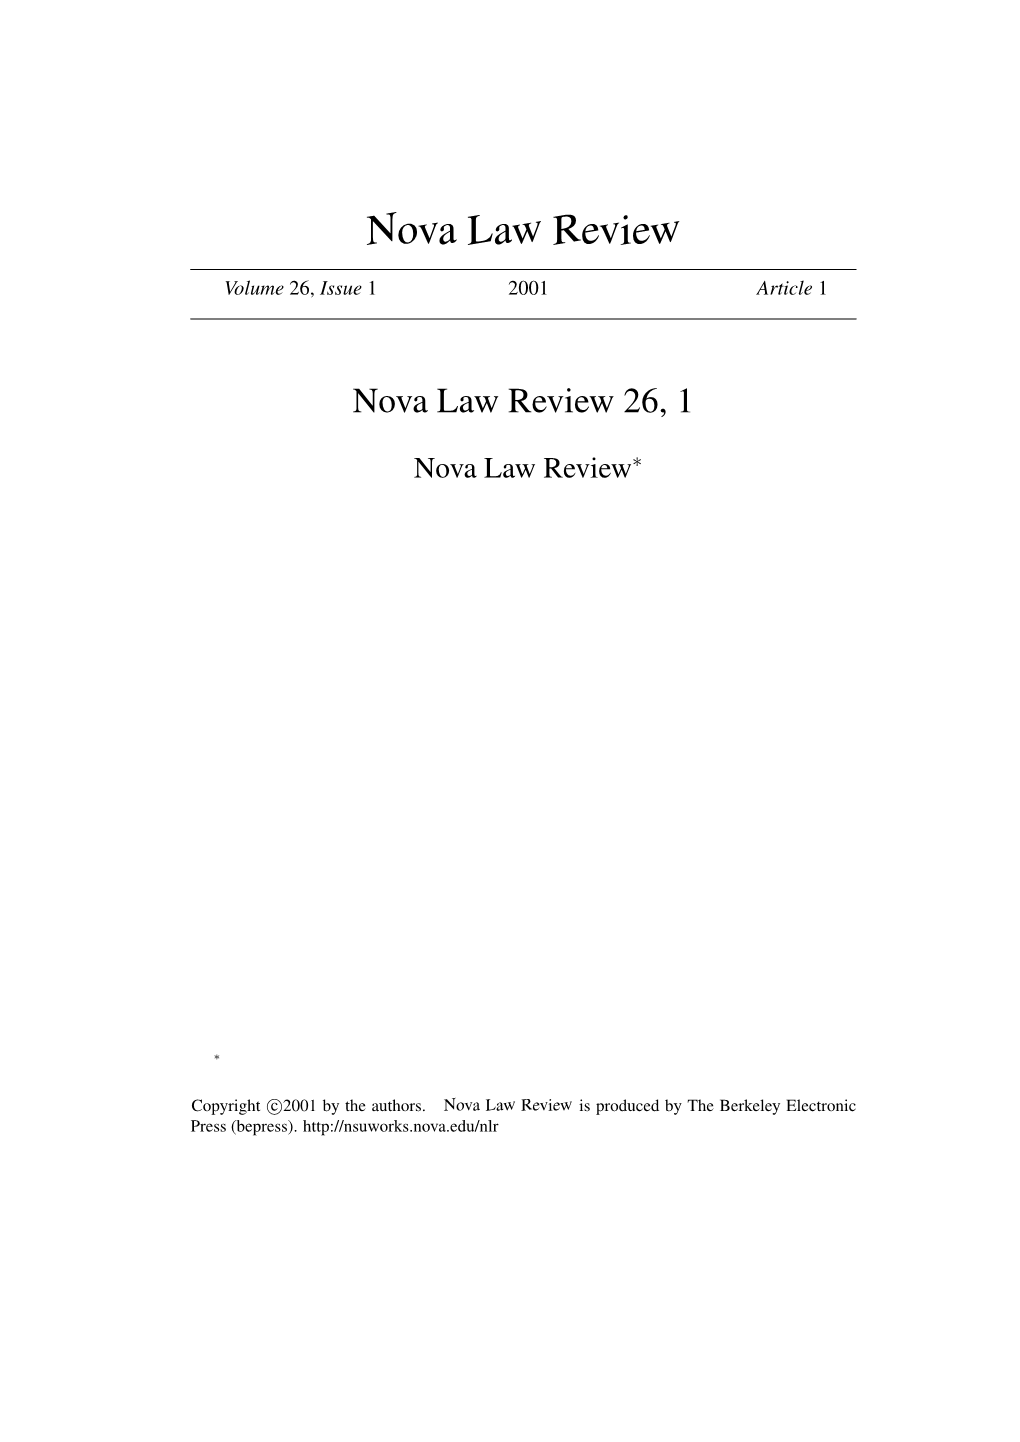 Nova Law Review 26, 1